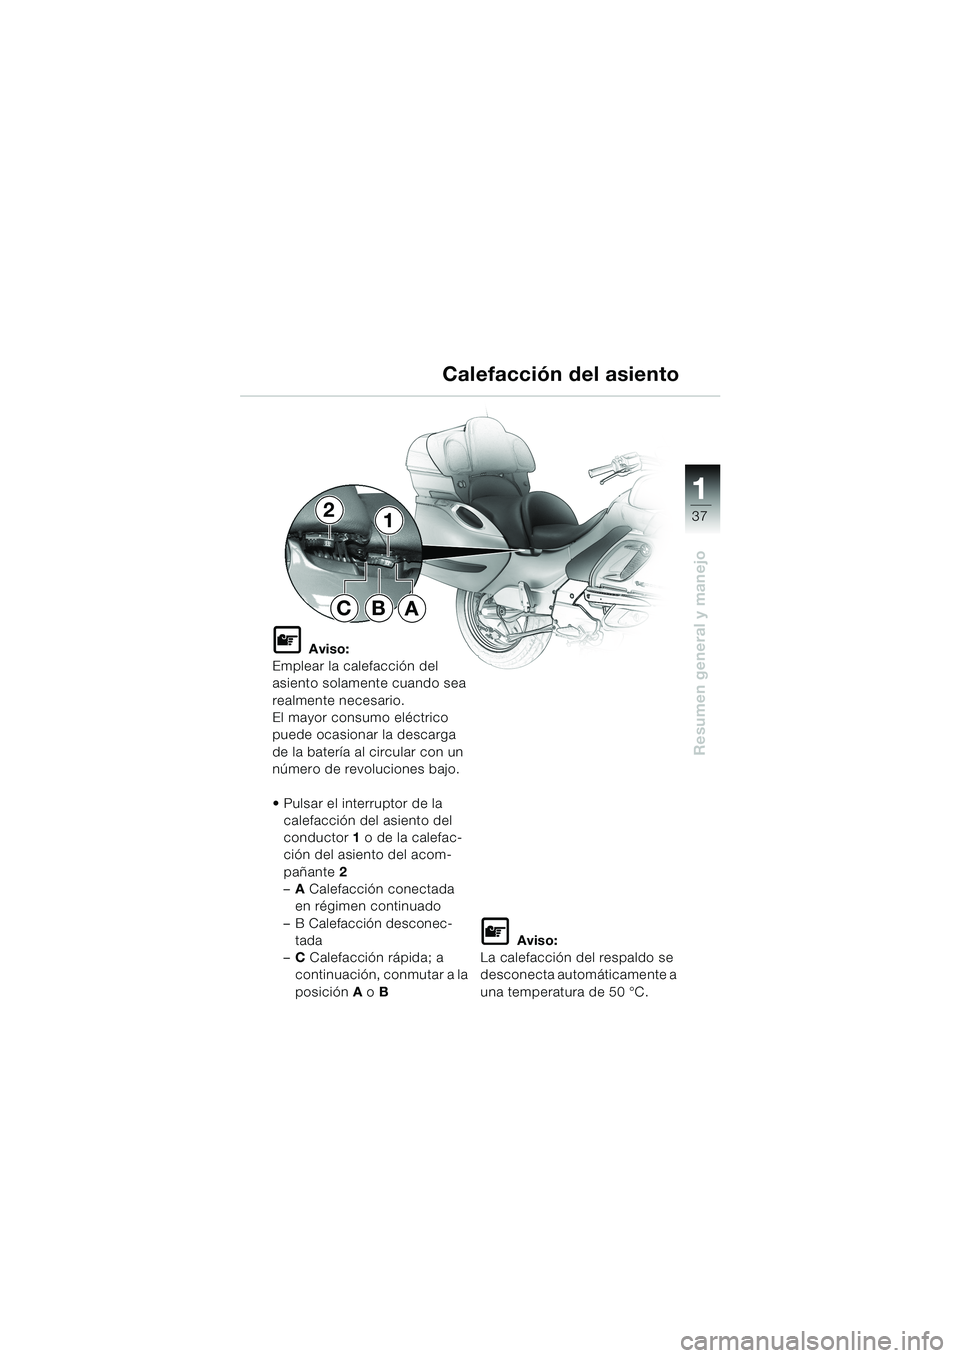 BMW MOTORRAD K 1200 LT 2002  Manual de instrucciones (in Spanish) 37
Resumen general y manejo
1
Calefacción del asiento
L Aviso:
Emplear la calefacción del 
asiento solamente cuando sea 
realmente necesario.
El mayor consumo eléctrico 
puede ocasionar la descarga